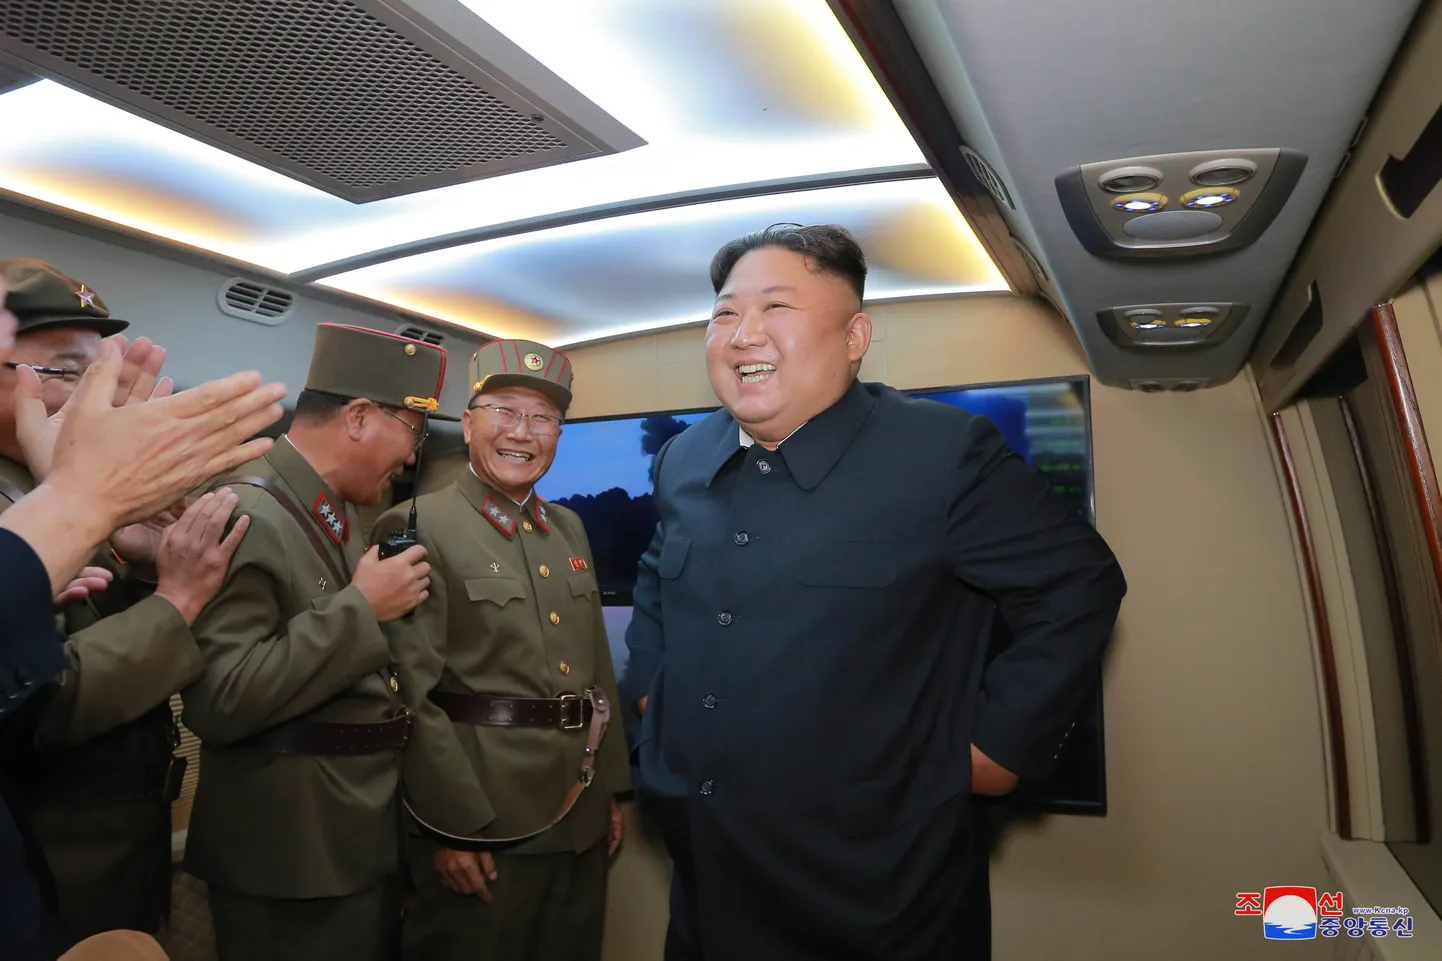 Põhja-Korea liider Kim Jong-un (paremal) rõõmustamas pärast edukat lühimaarakettide katsetust 6. augustil teadmata asukohas Põhja-Koreas.